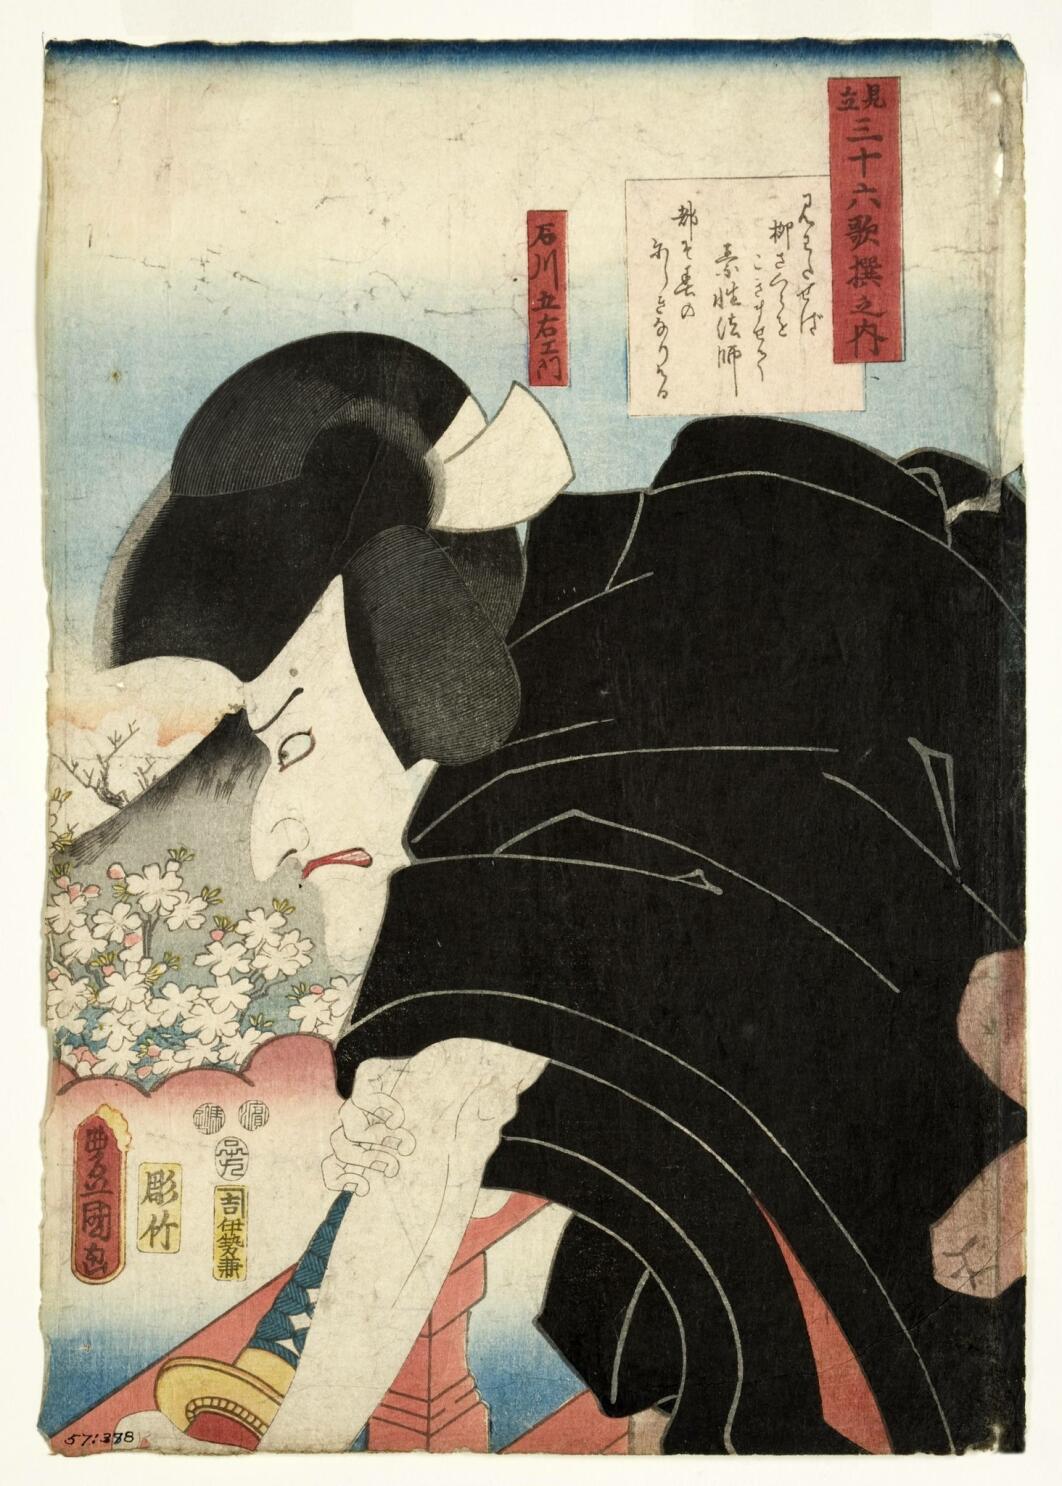 Japanese woodblock prints », 250 ans d'estampes japonaises - Toutelaculture